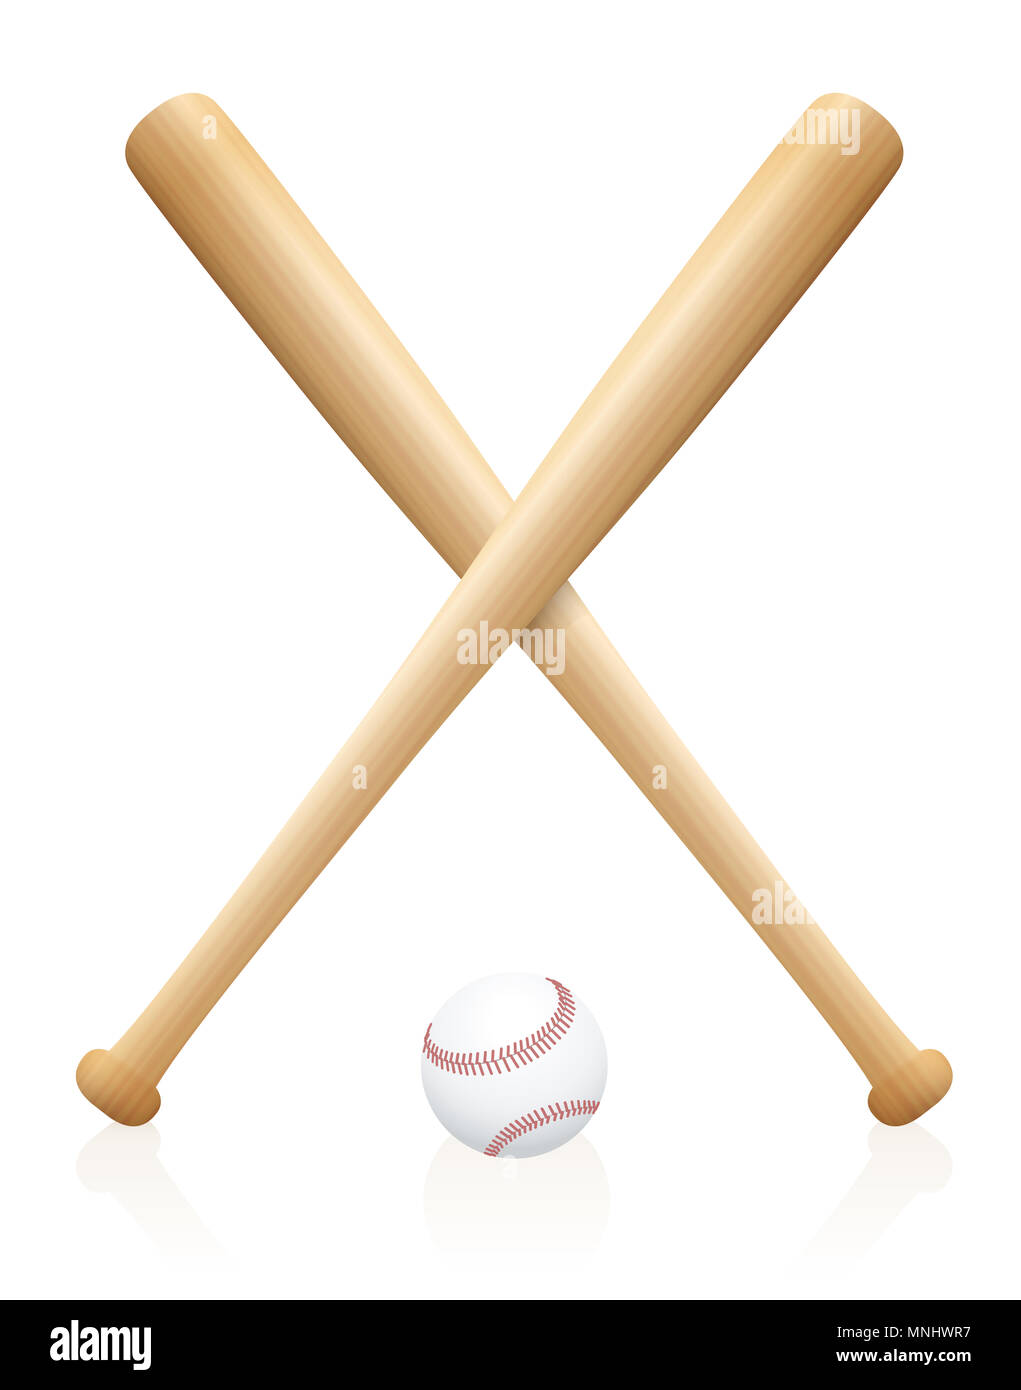 Zwei gekreuzte Baseballschläger mit einer Kugel unter. Symbol für den sportlichen Wettkampf, Spiel, Wettbewerb, Kampf, Kämpfen. Stockfoto